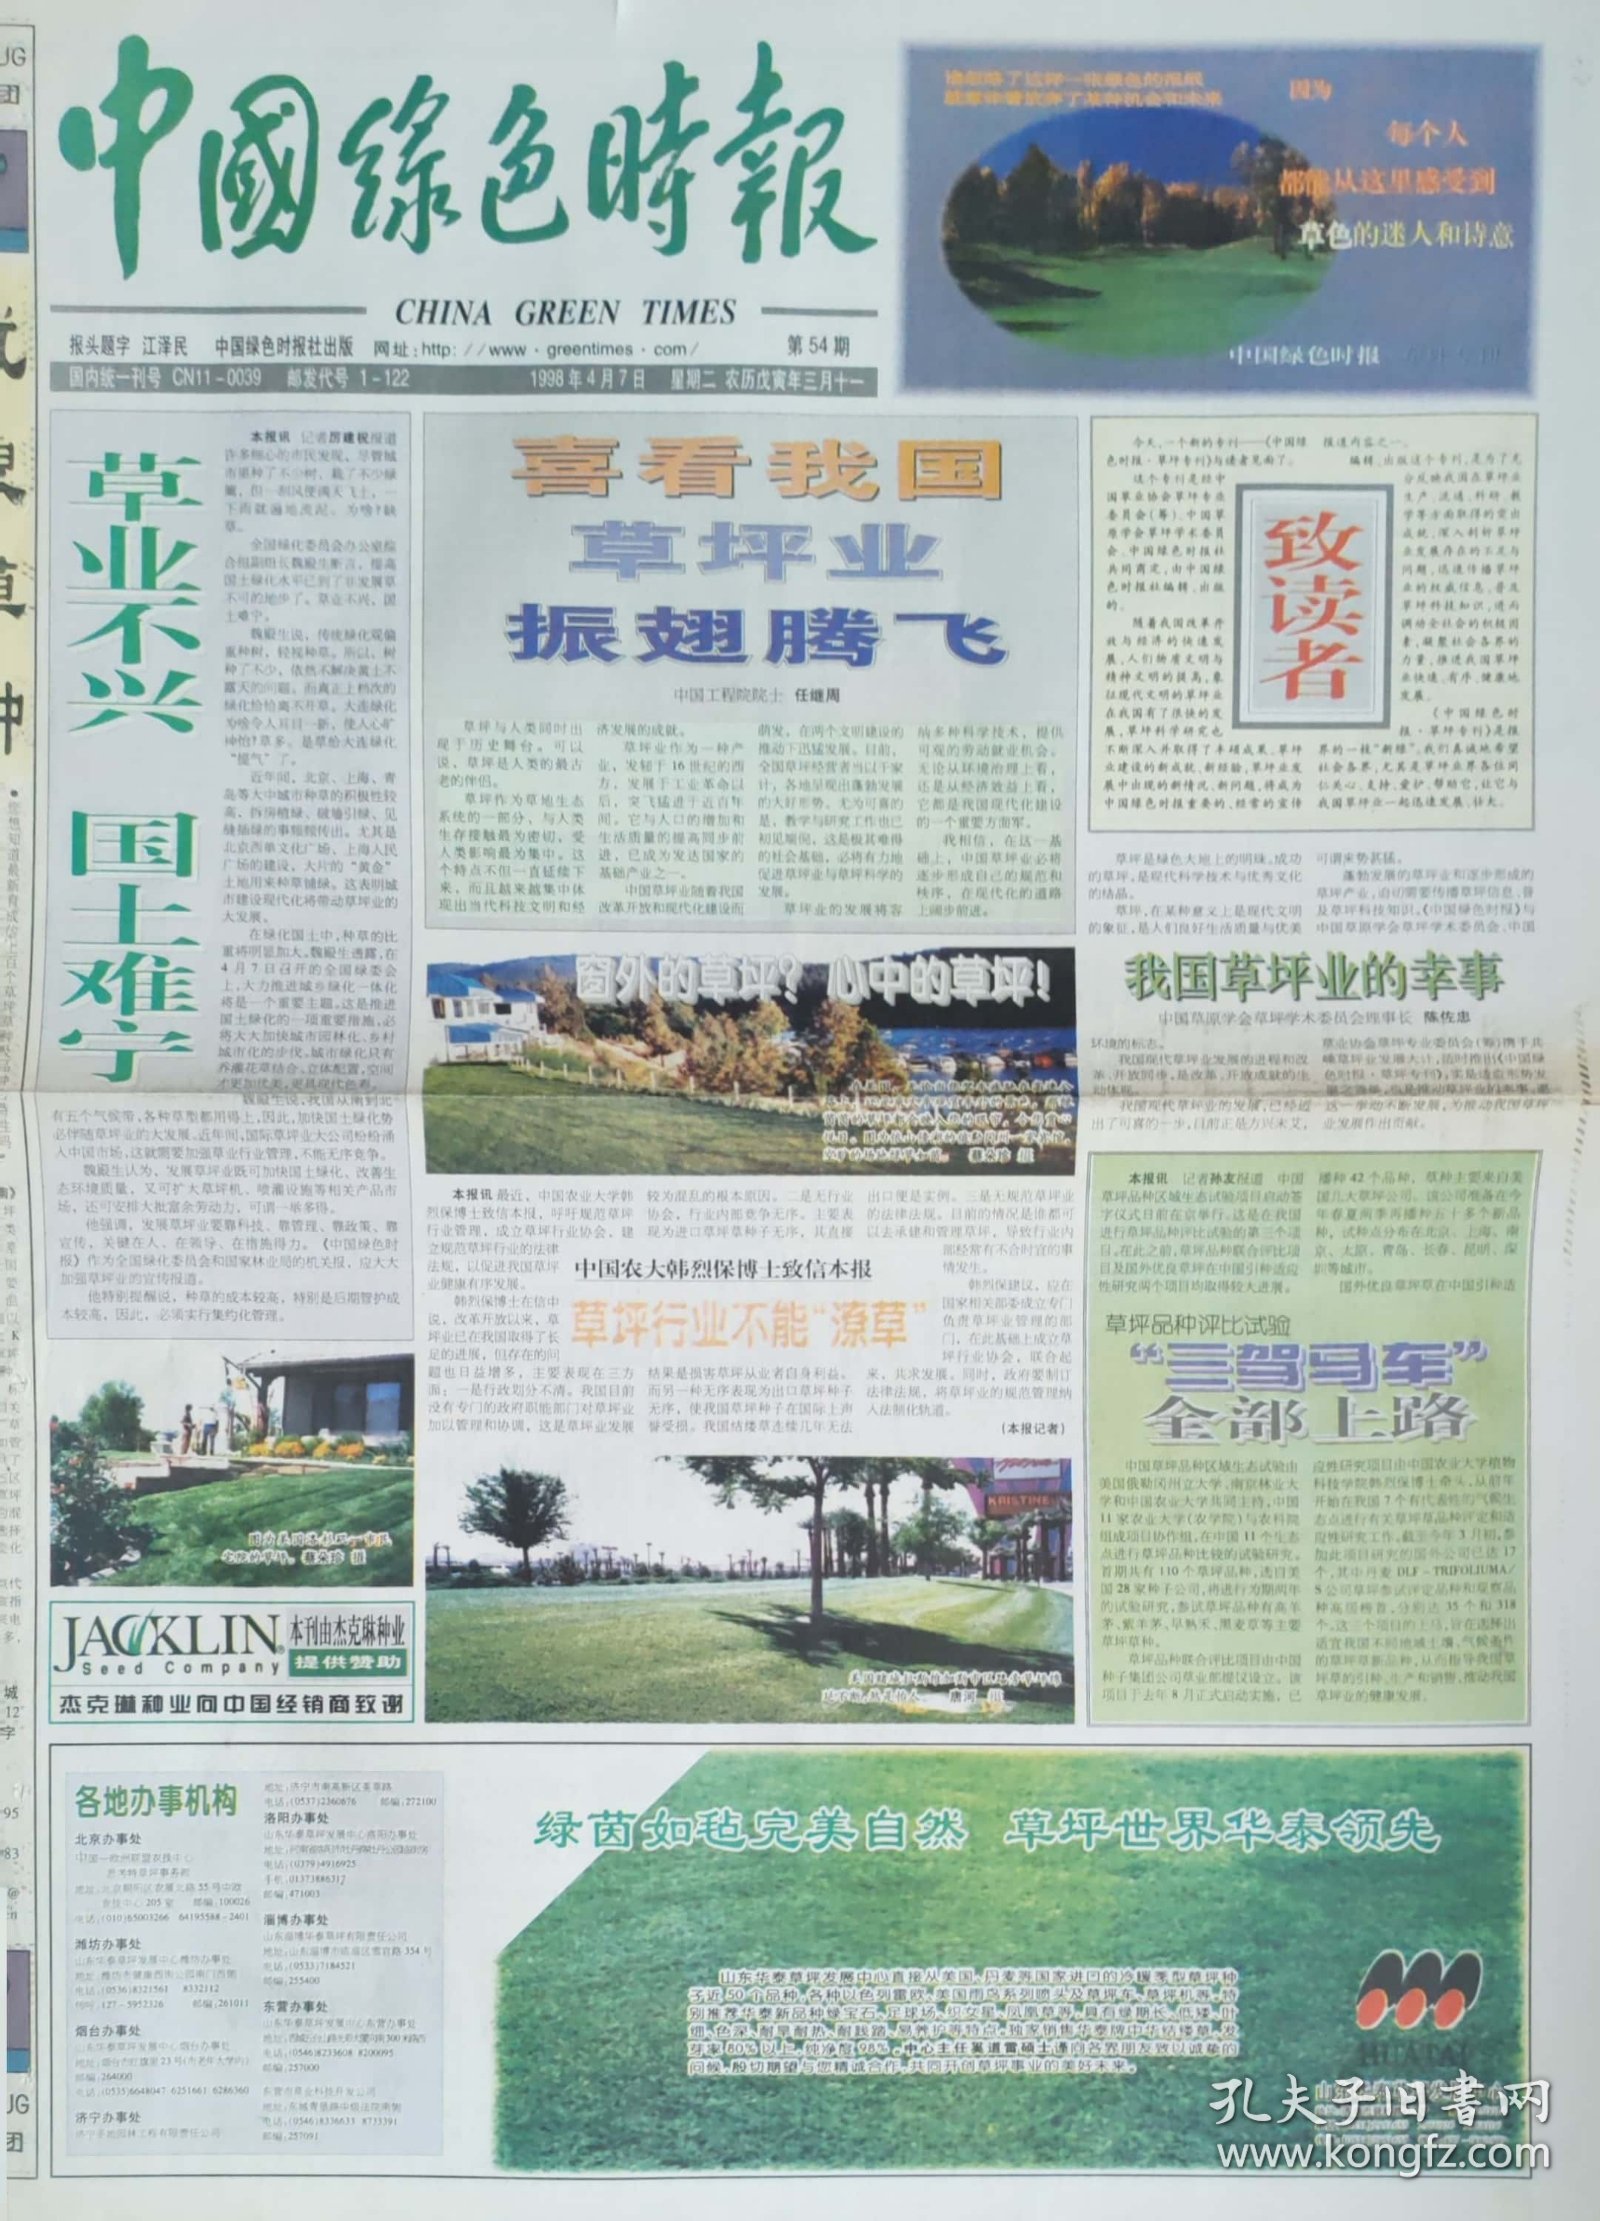 中国绿色时报草坪周刊创刊号